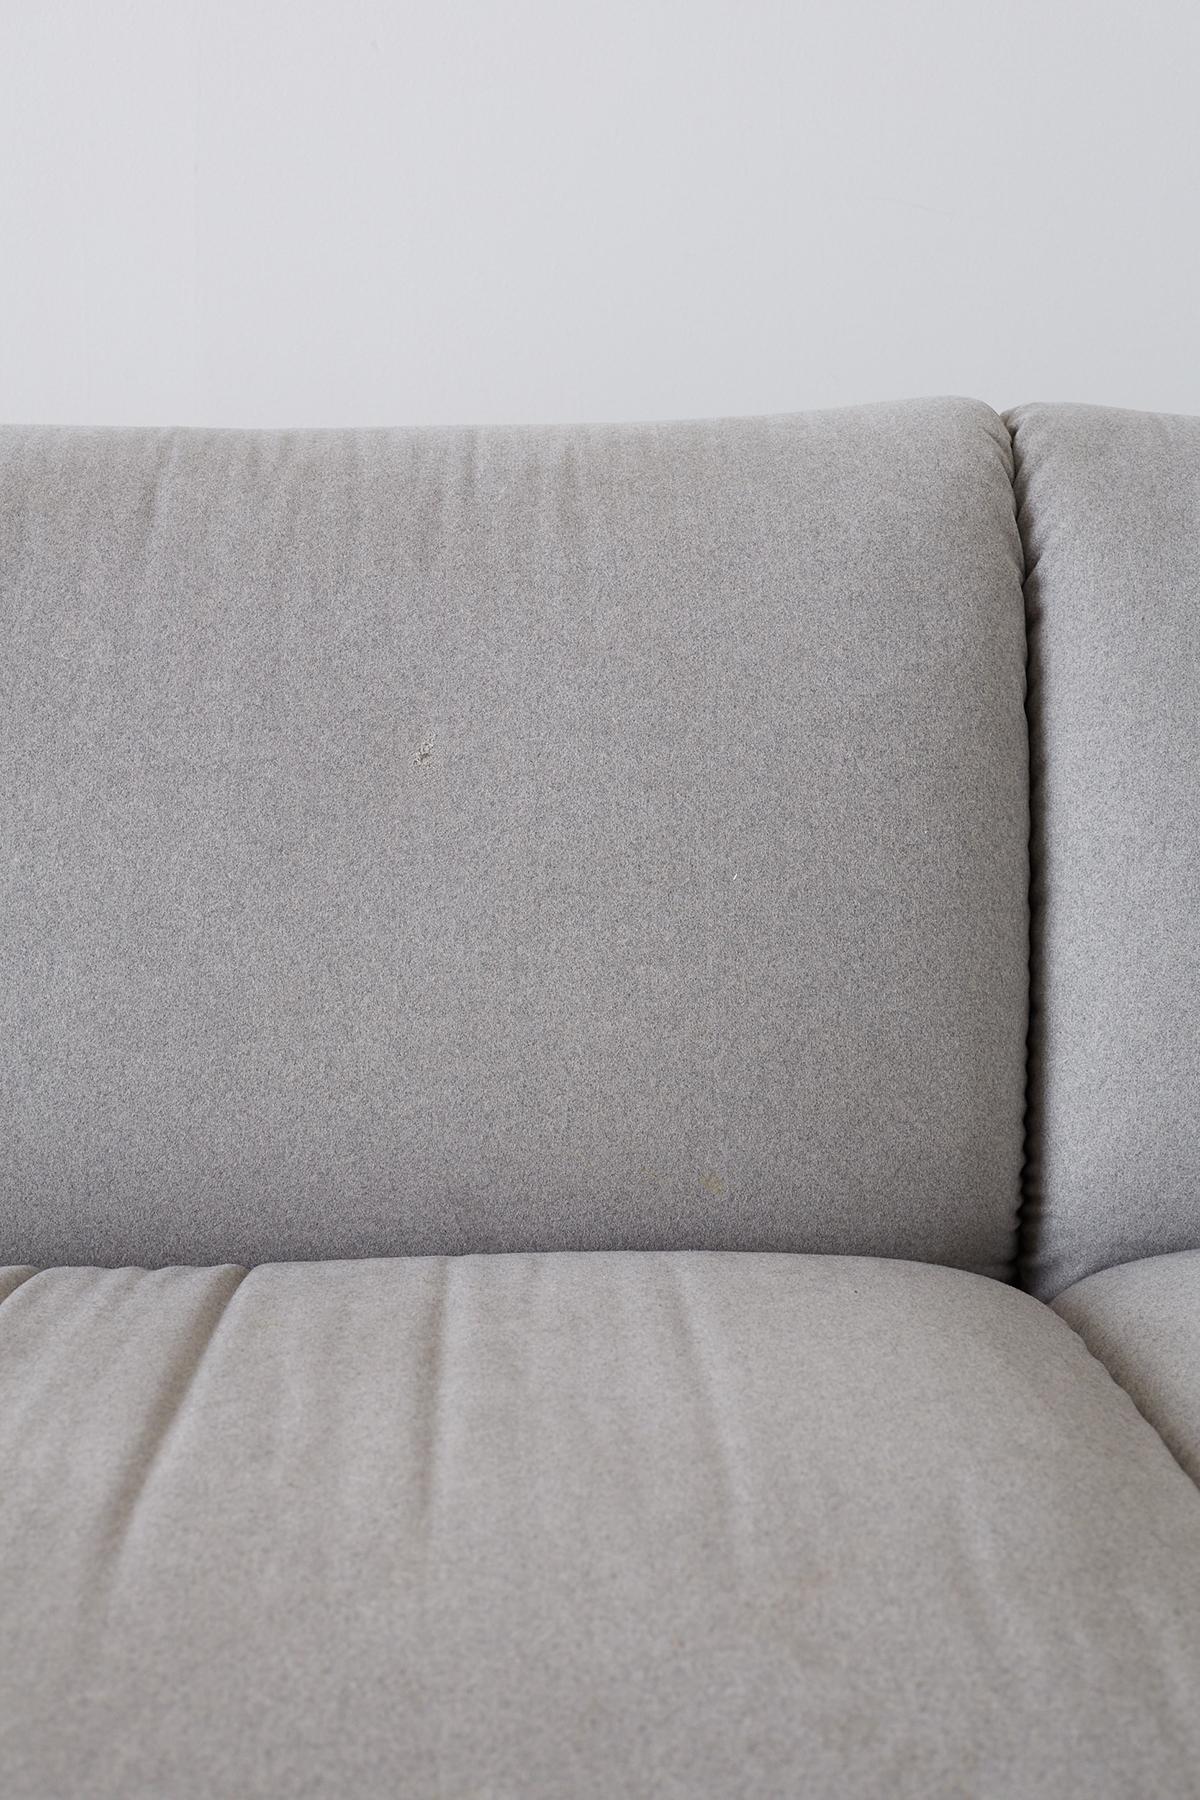 Mario Bellini for Cassina Tentazione Upholstered Sofa In Good Condition In Rio Vista, CA